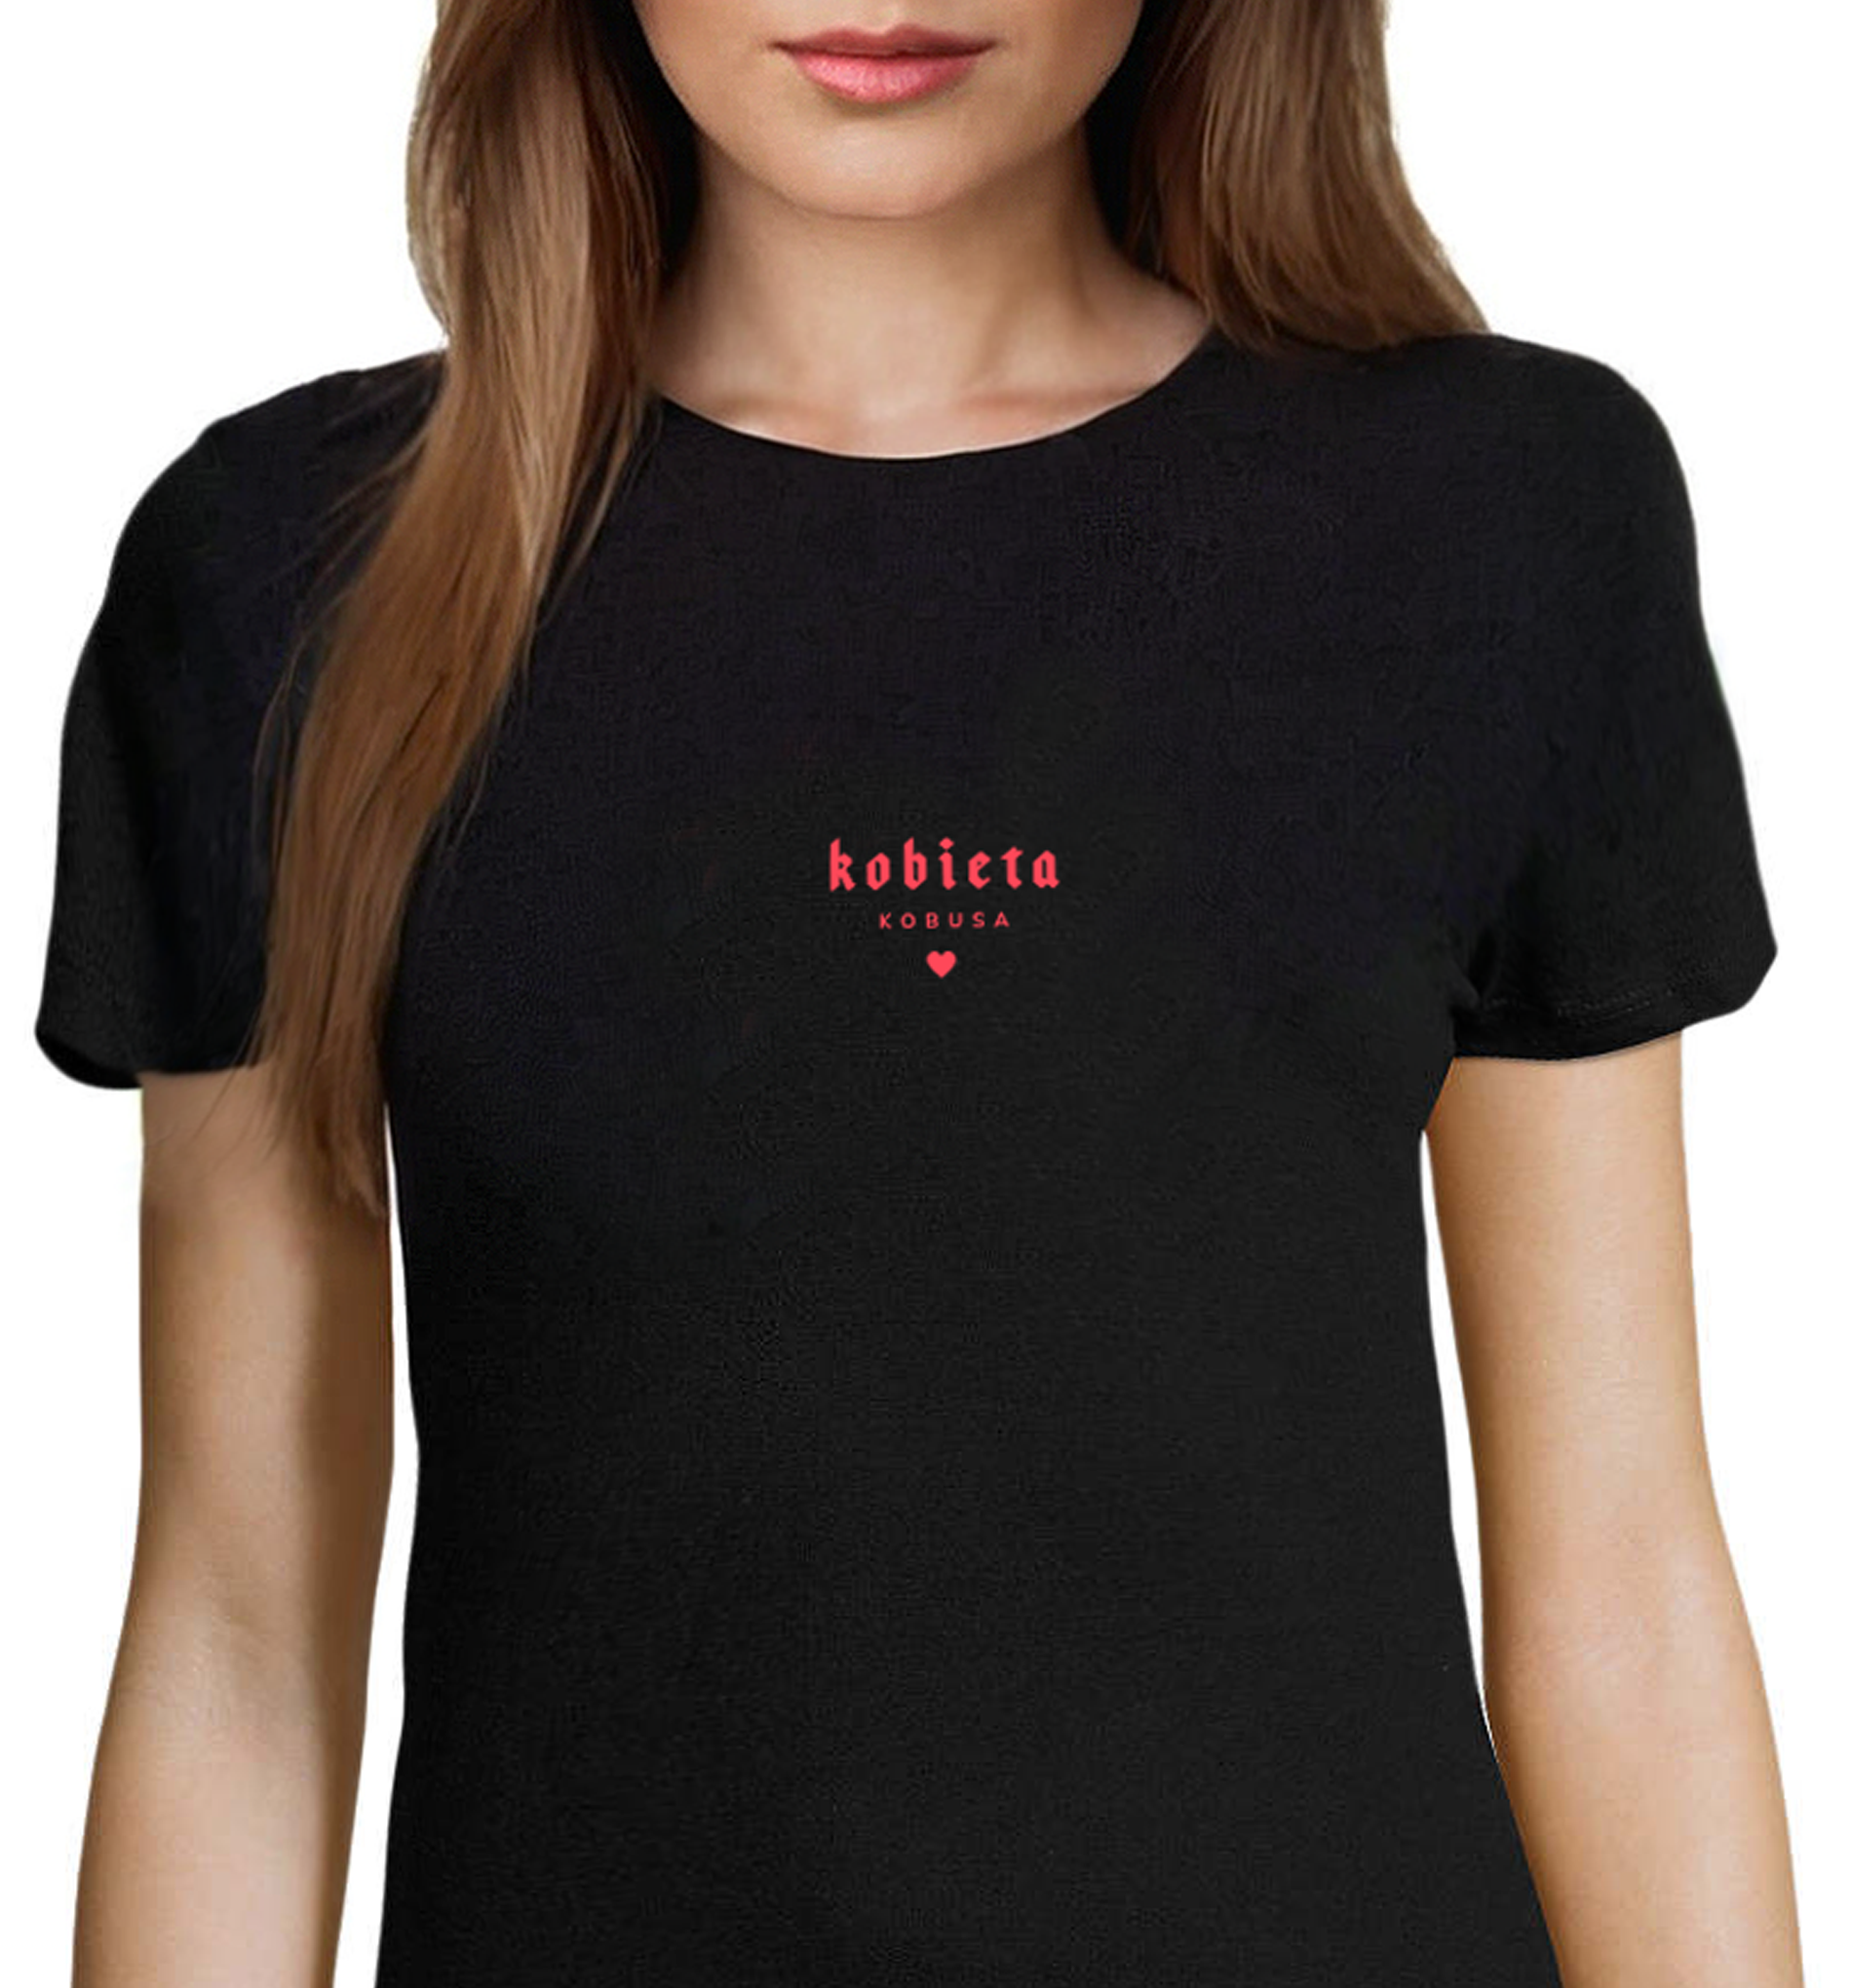 Czarny bawełniany t-shirt Kobieta Kobusa - limitowana